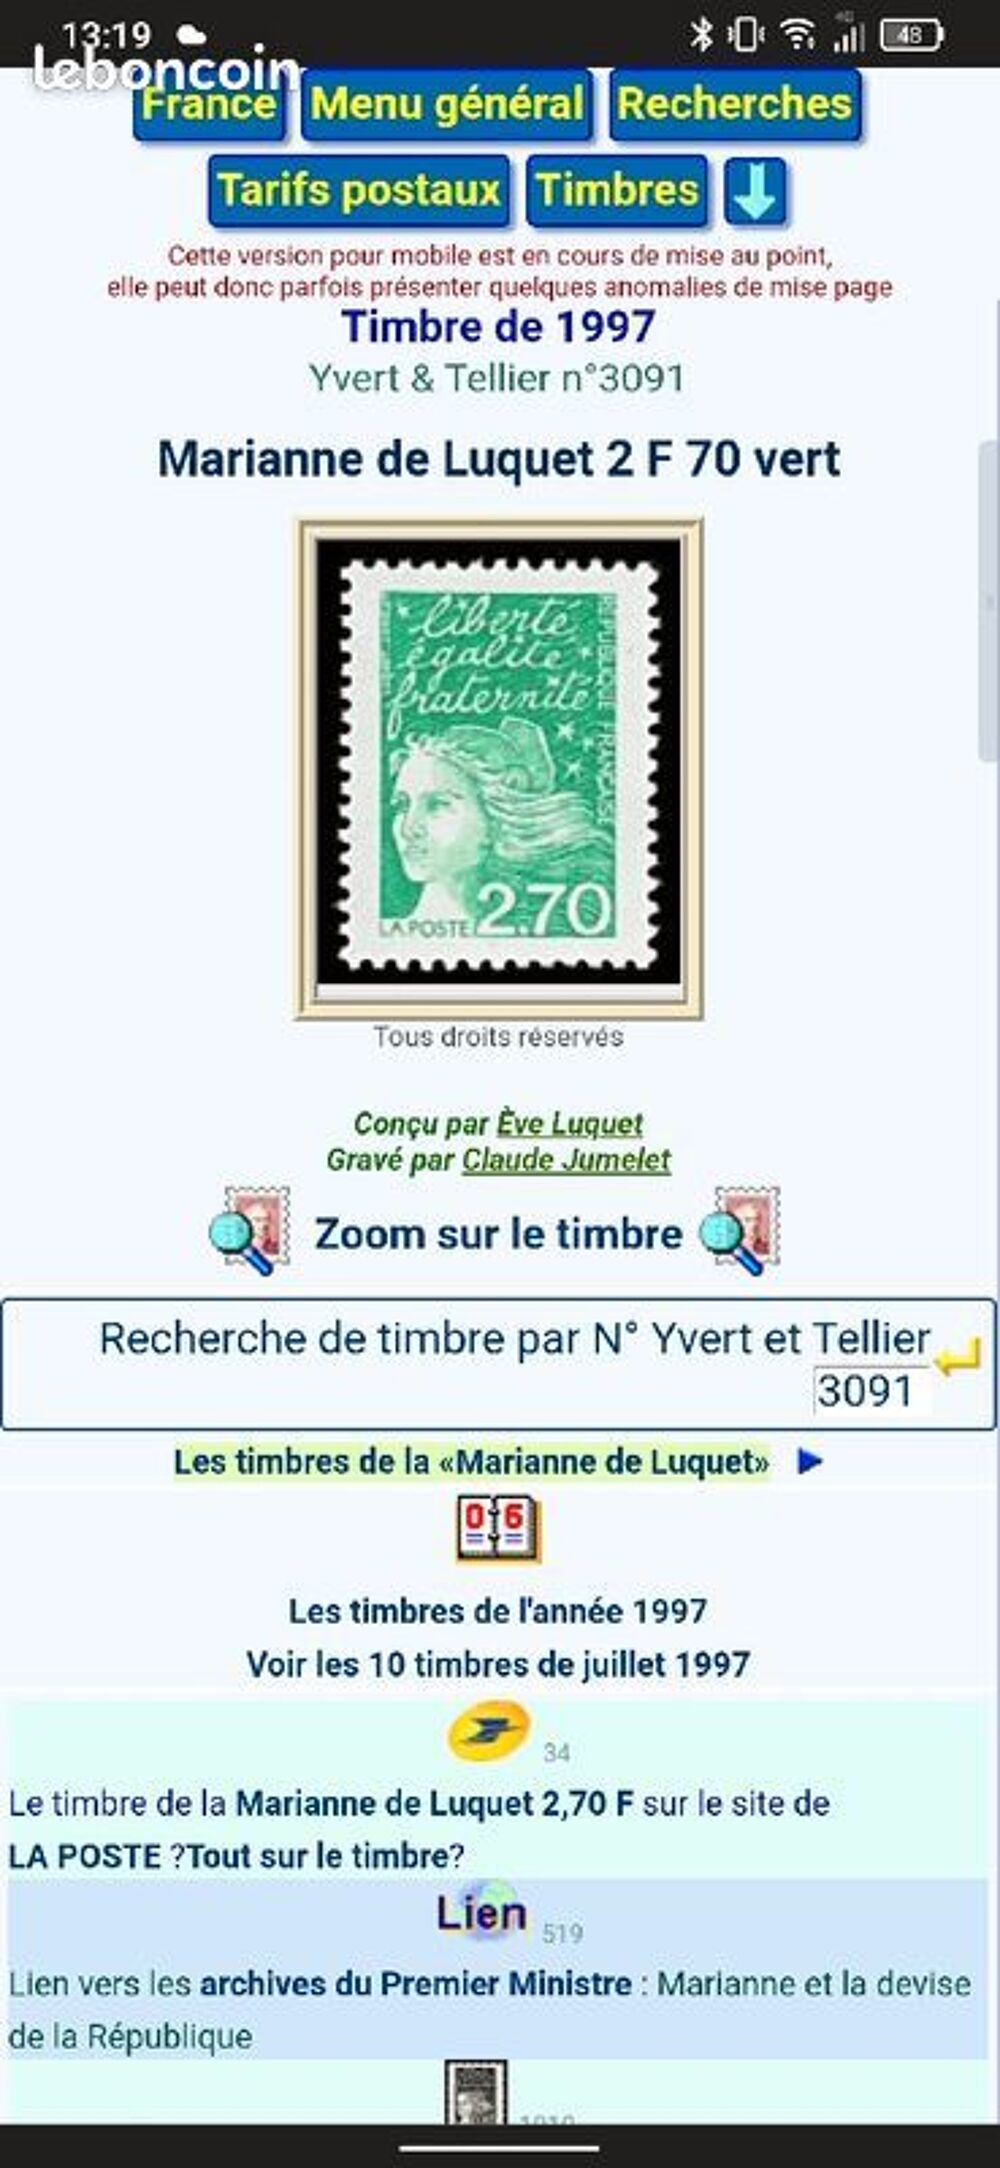 Timbre Marianne de Luquet 2 F 70 vert n'3091 